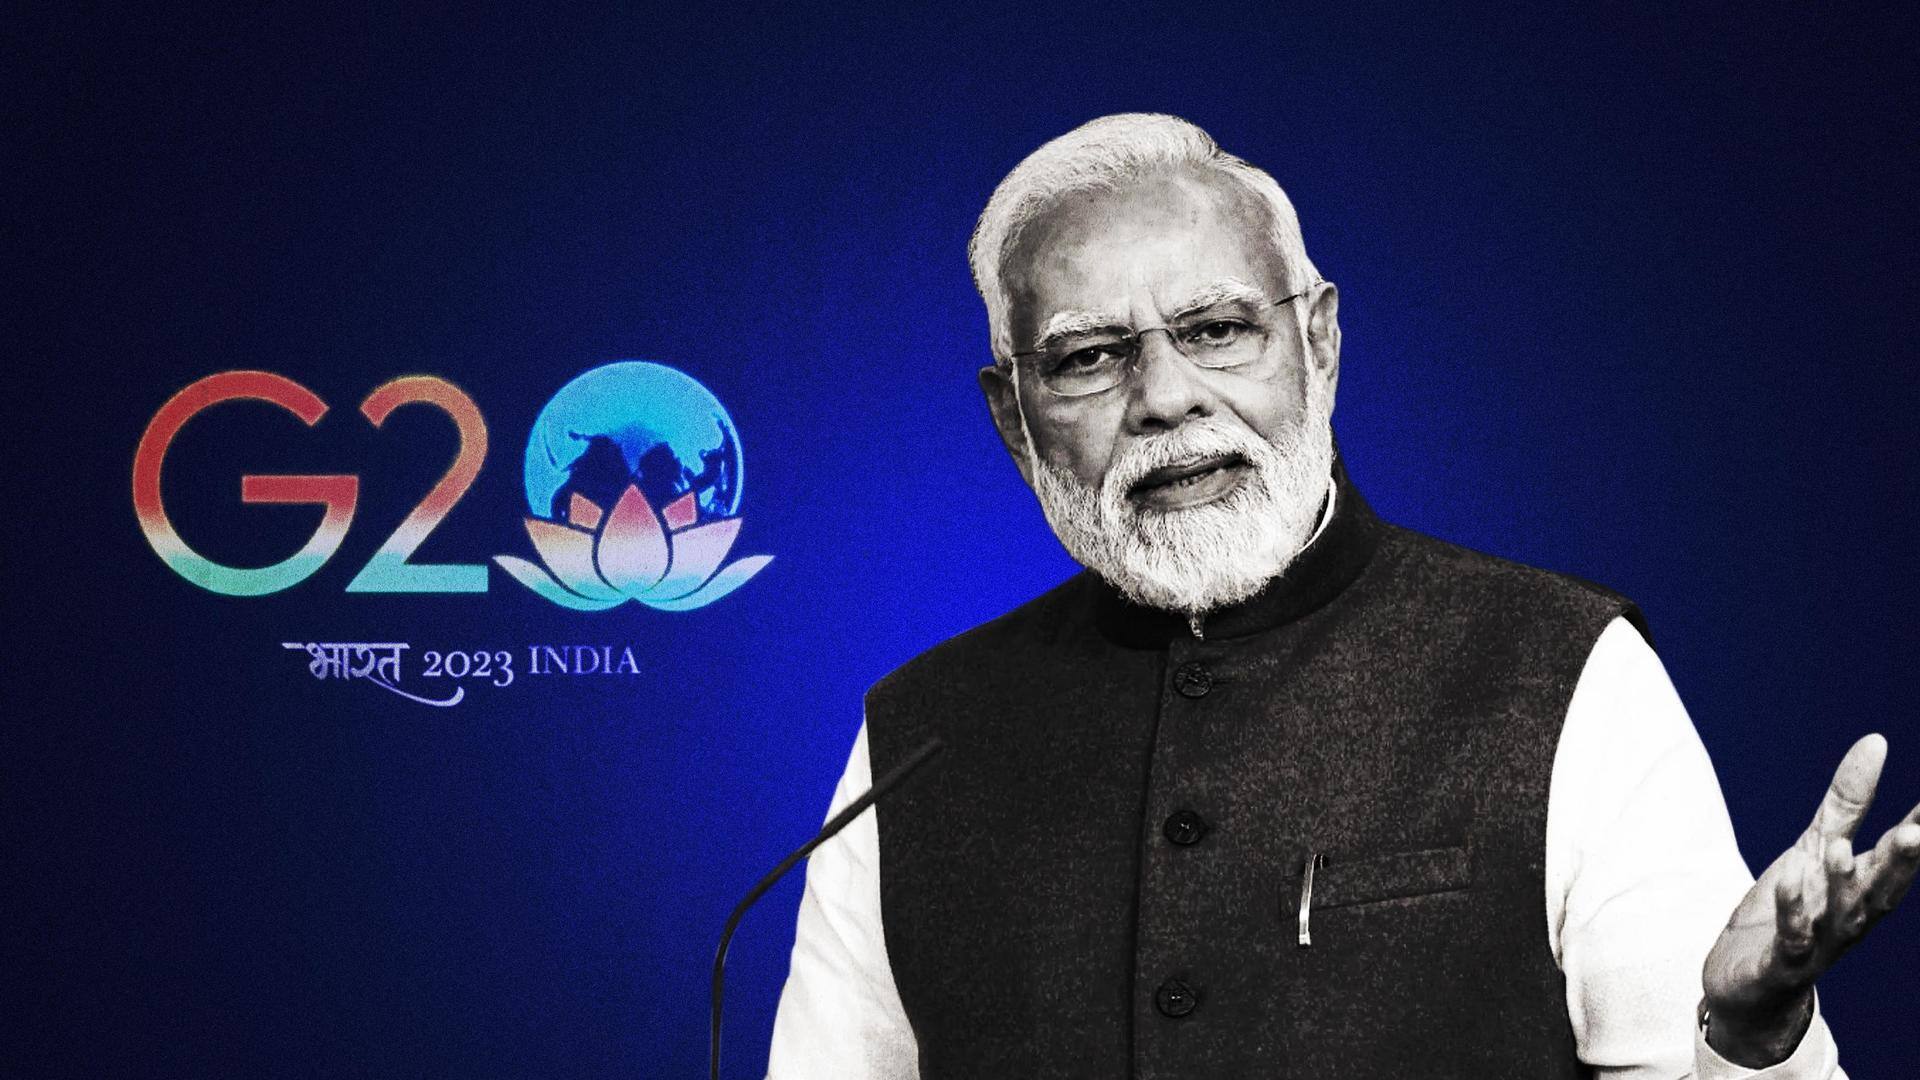 BJP, Congress exchange barbs over G20 logo having 'lotus'